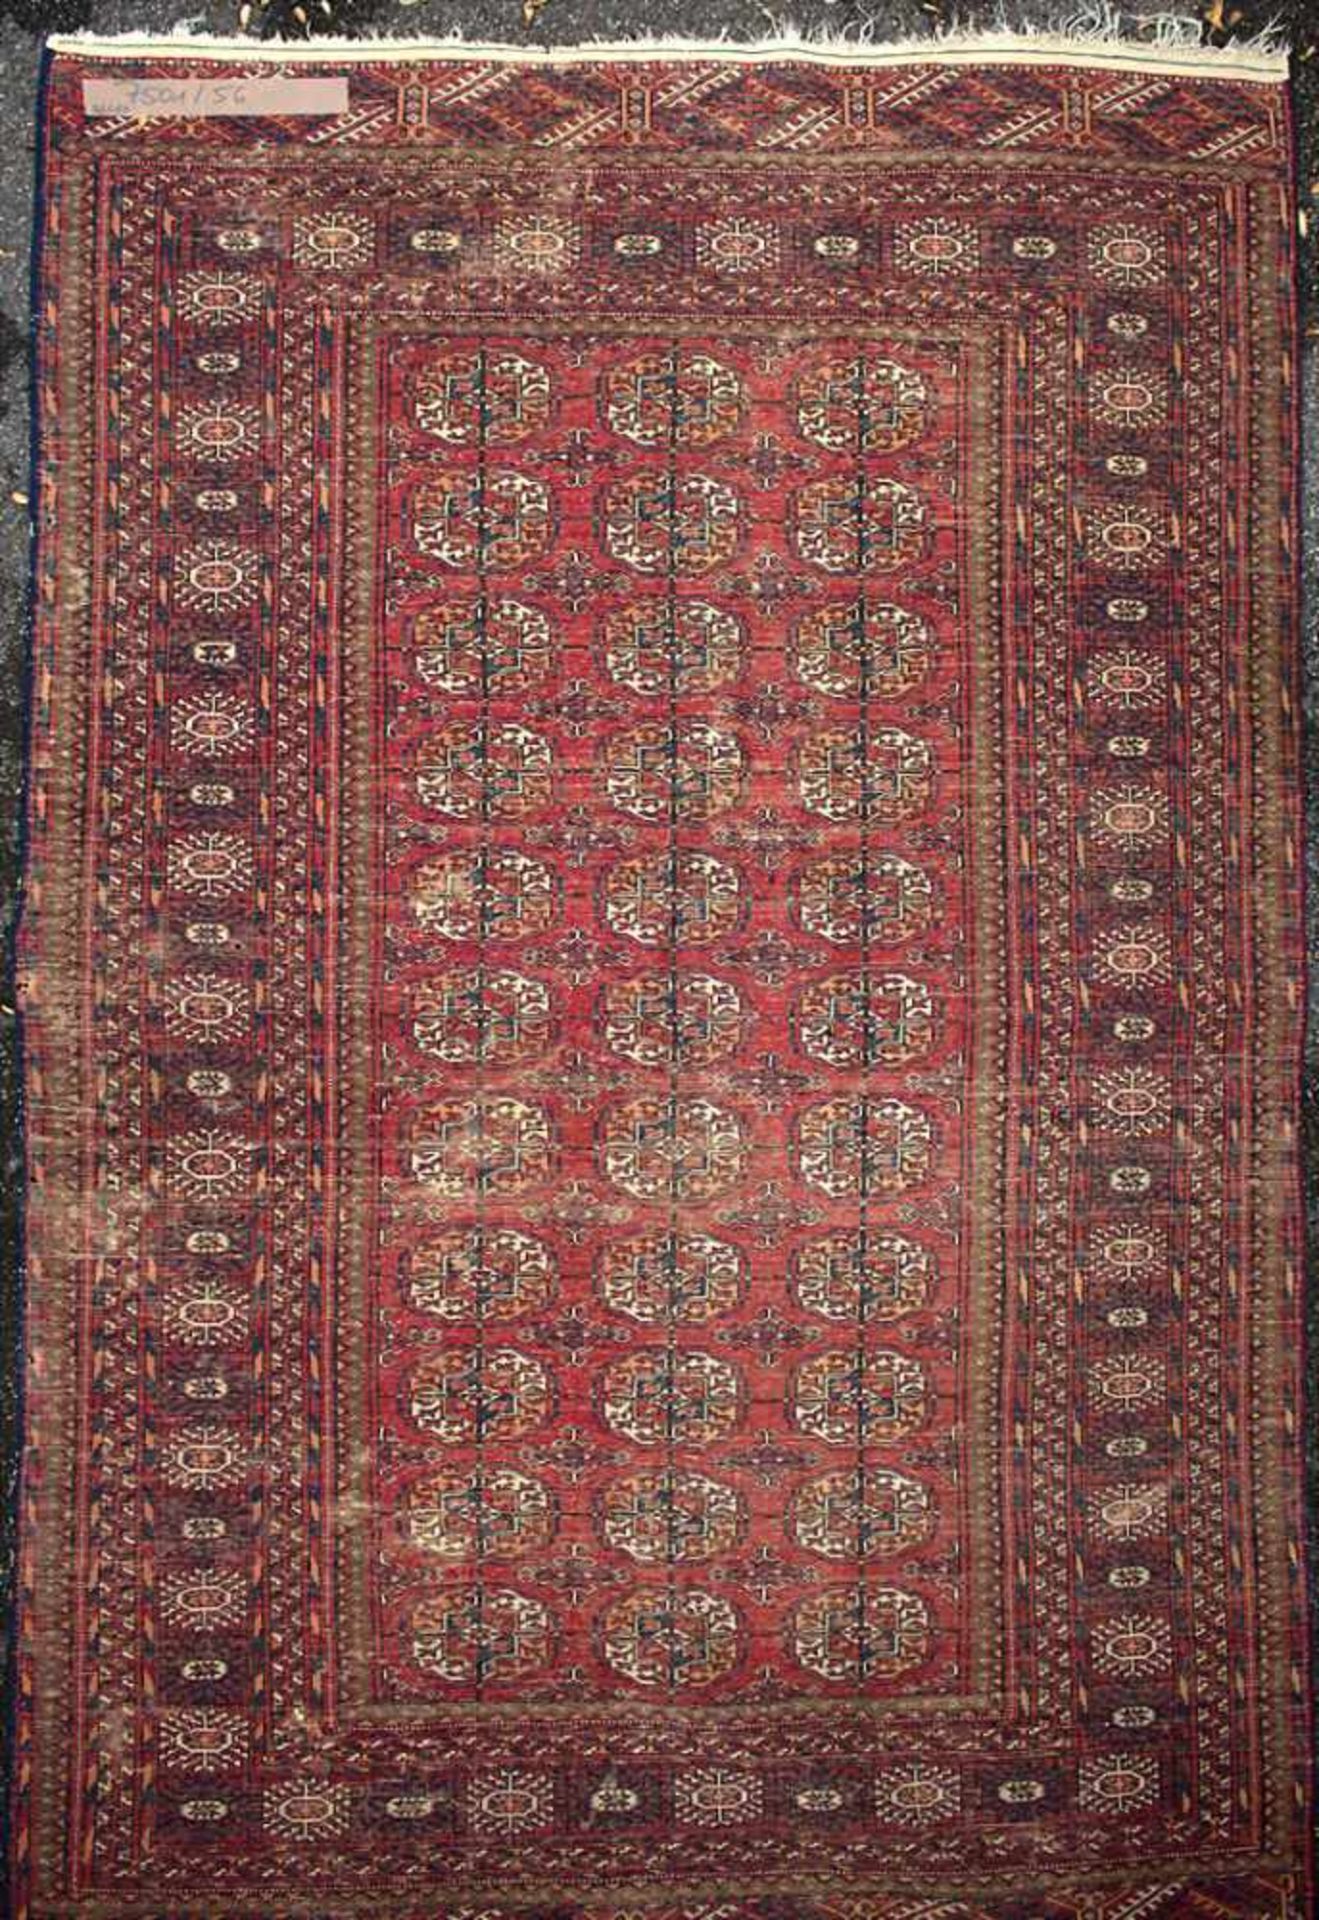 Orientteppich / An oriental carpetMaterial: Wolle auf Baumwolle, Maße: 256 x 160 cm, Zustand: - Image 3 of 5